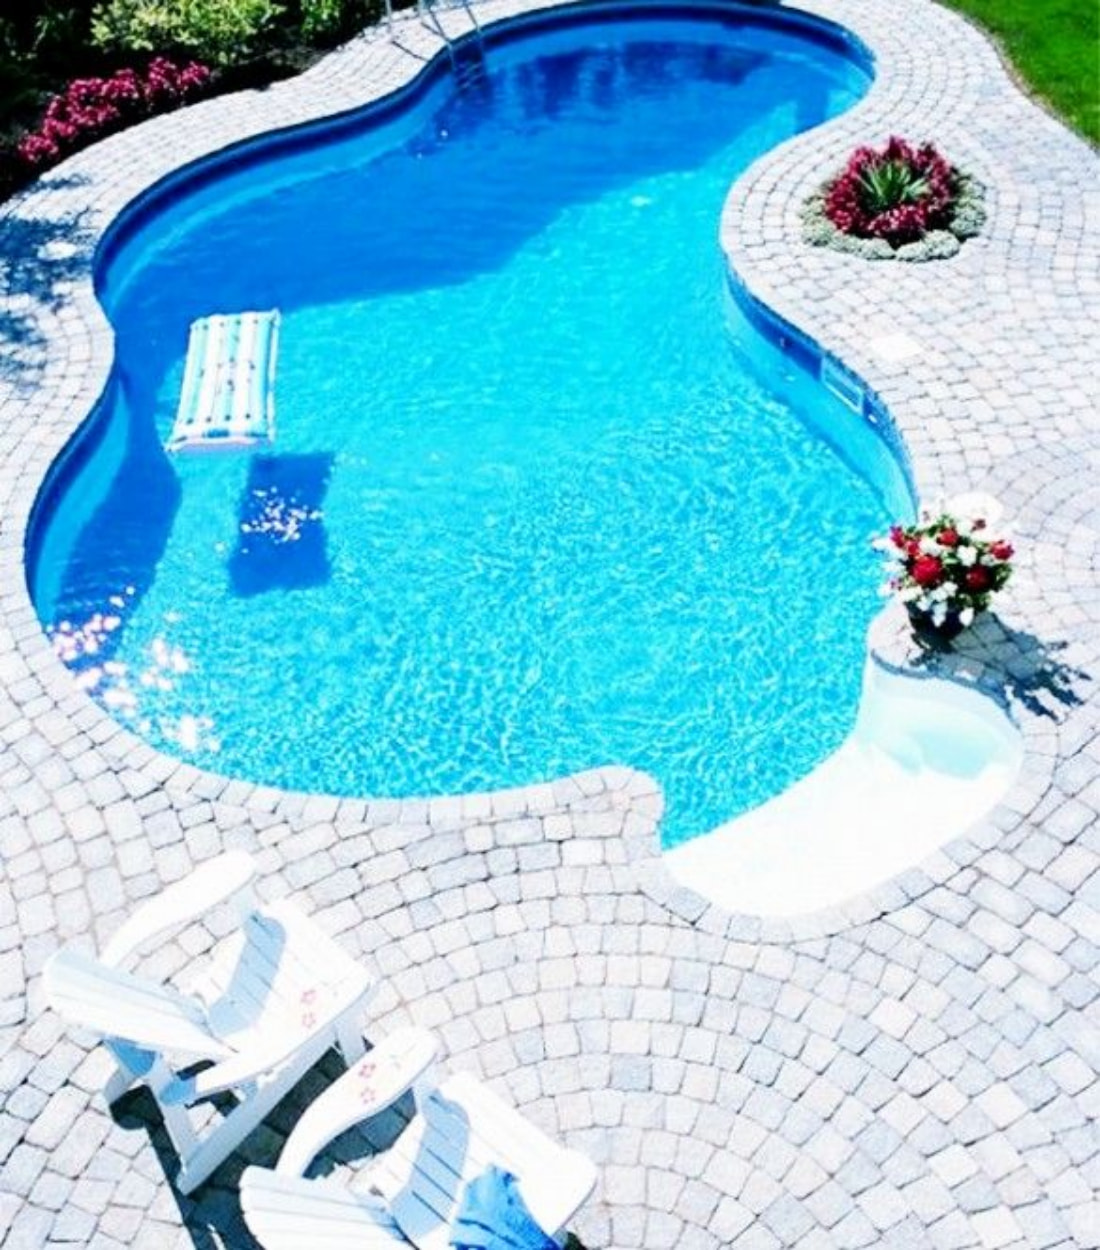 Hình dáng bể bơi nên thiết kế theo hình tròn, oval hoặc uốn lượn là tốt nhất về mặt phong thủy